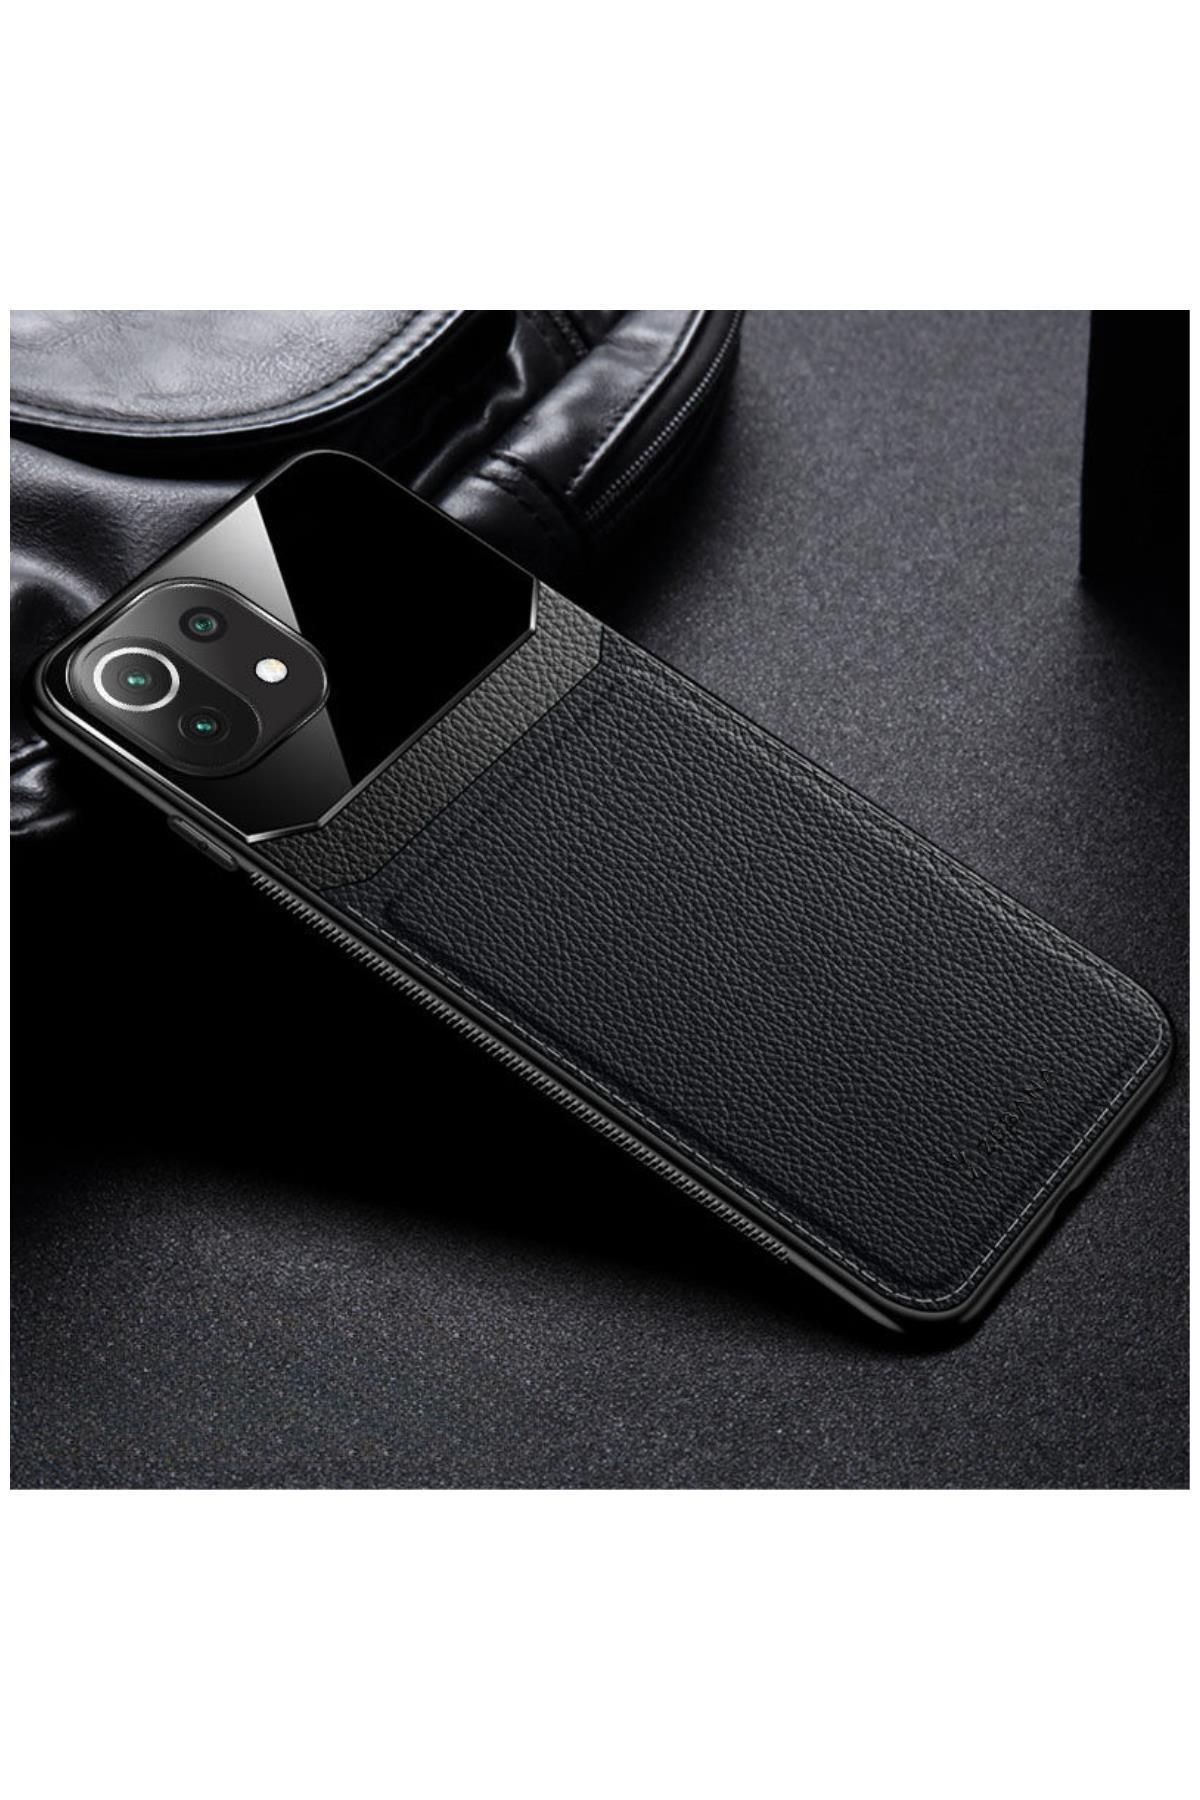 Zebana Xiaomi Mi 11 Lite 5g Uyumlu Kılıf Lens Deri Kılıf Siyah